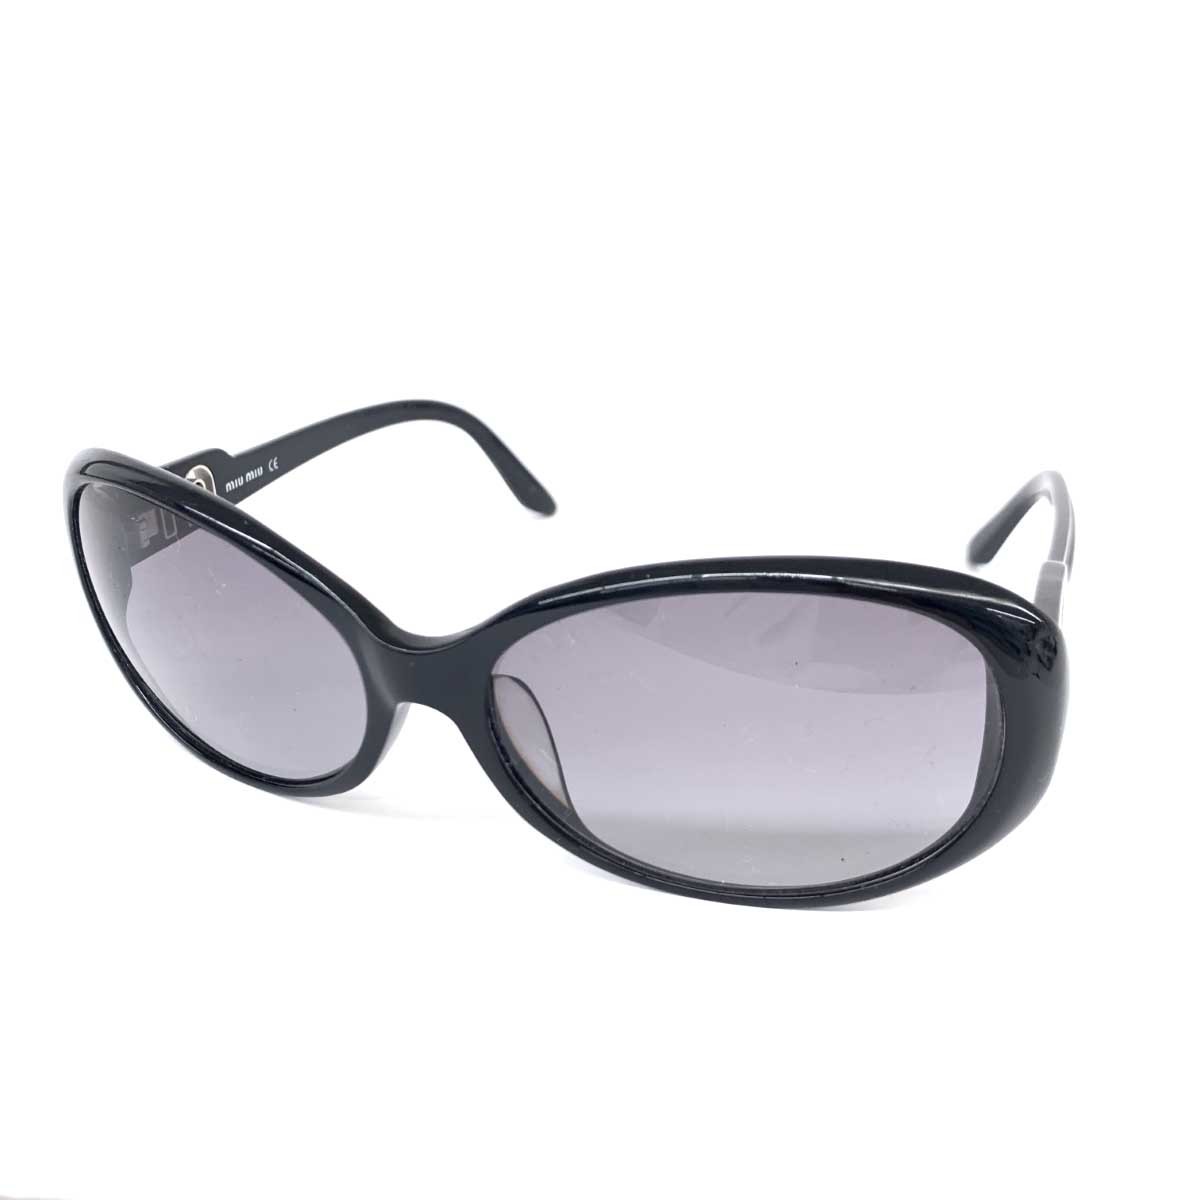 ◆miumiu ミュウミュウ サングラス◆SMU23I ブラック グラデーション レディース 60□16 1AB 5D1 135 sunglasses 服飾小物